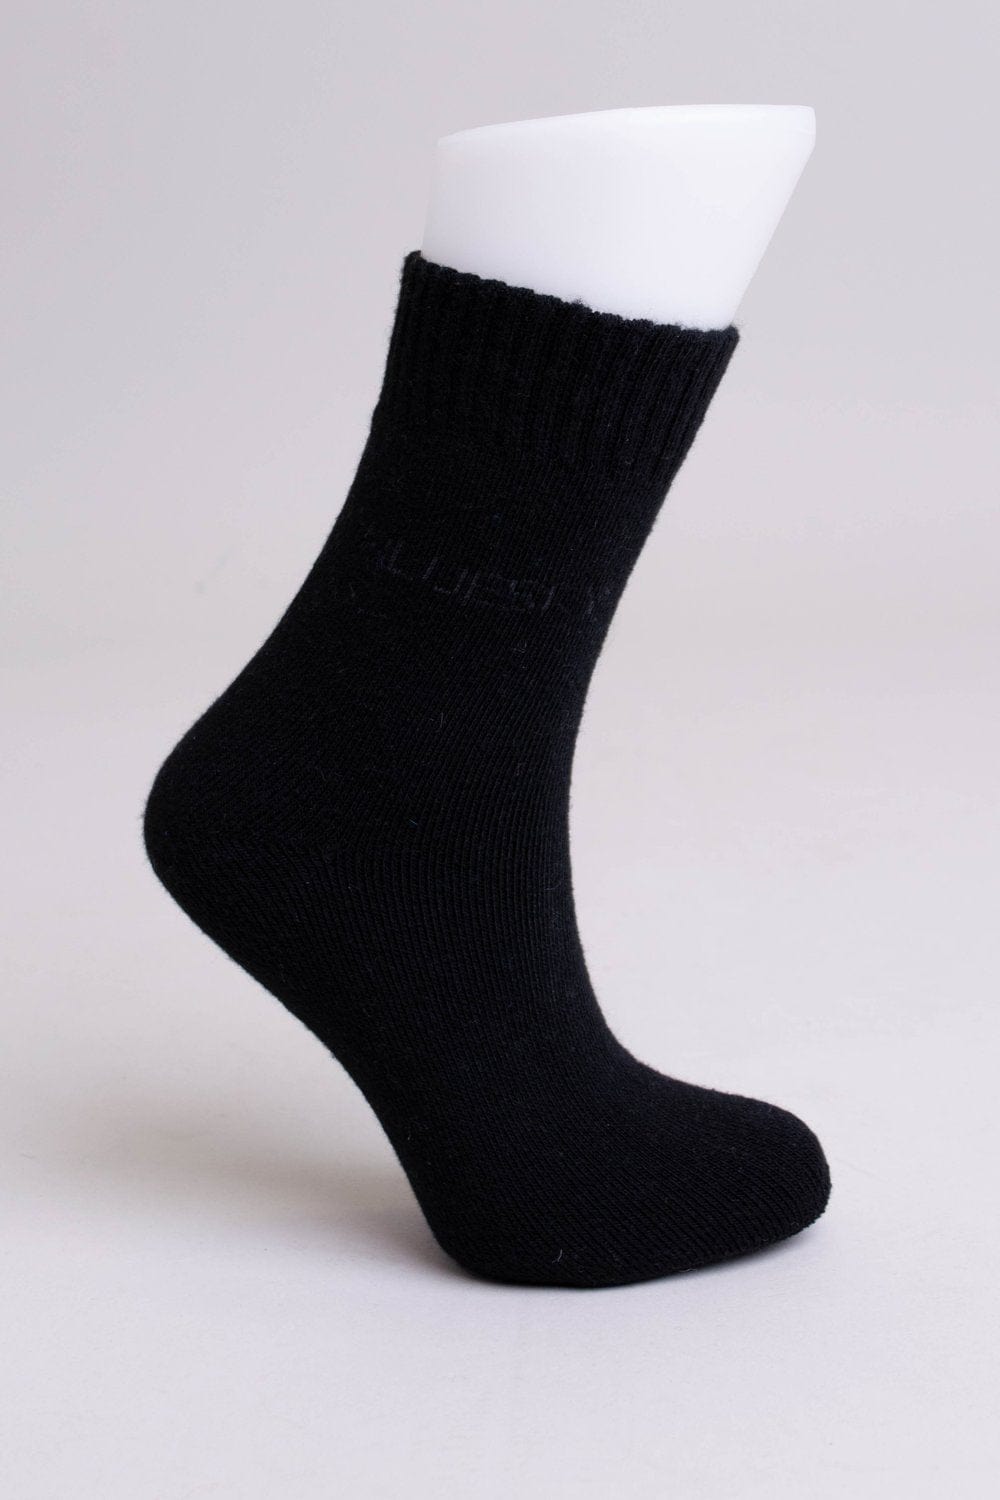 Blue Sky Women&#39;s Socks Black / M Women&#39;s Socks - Merino Wool